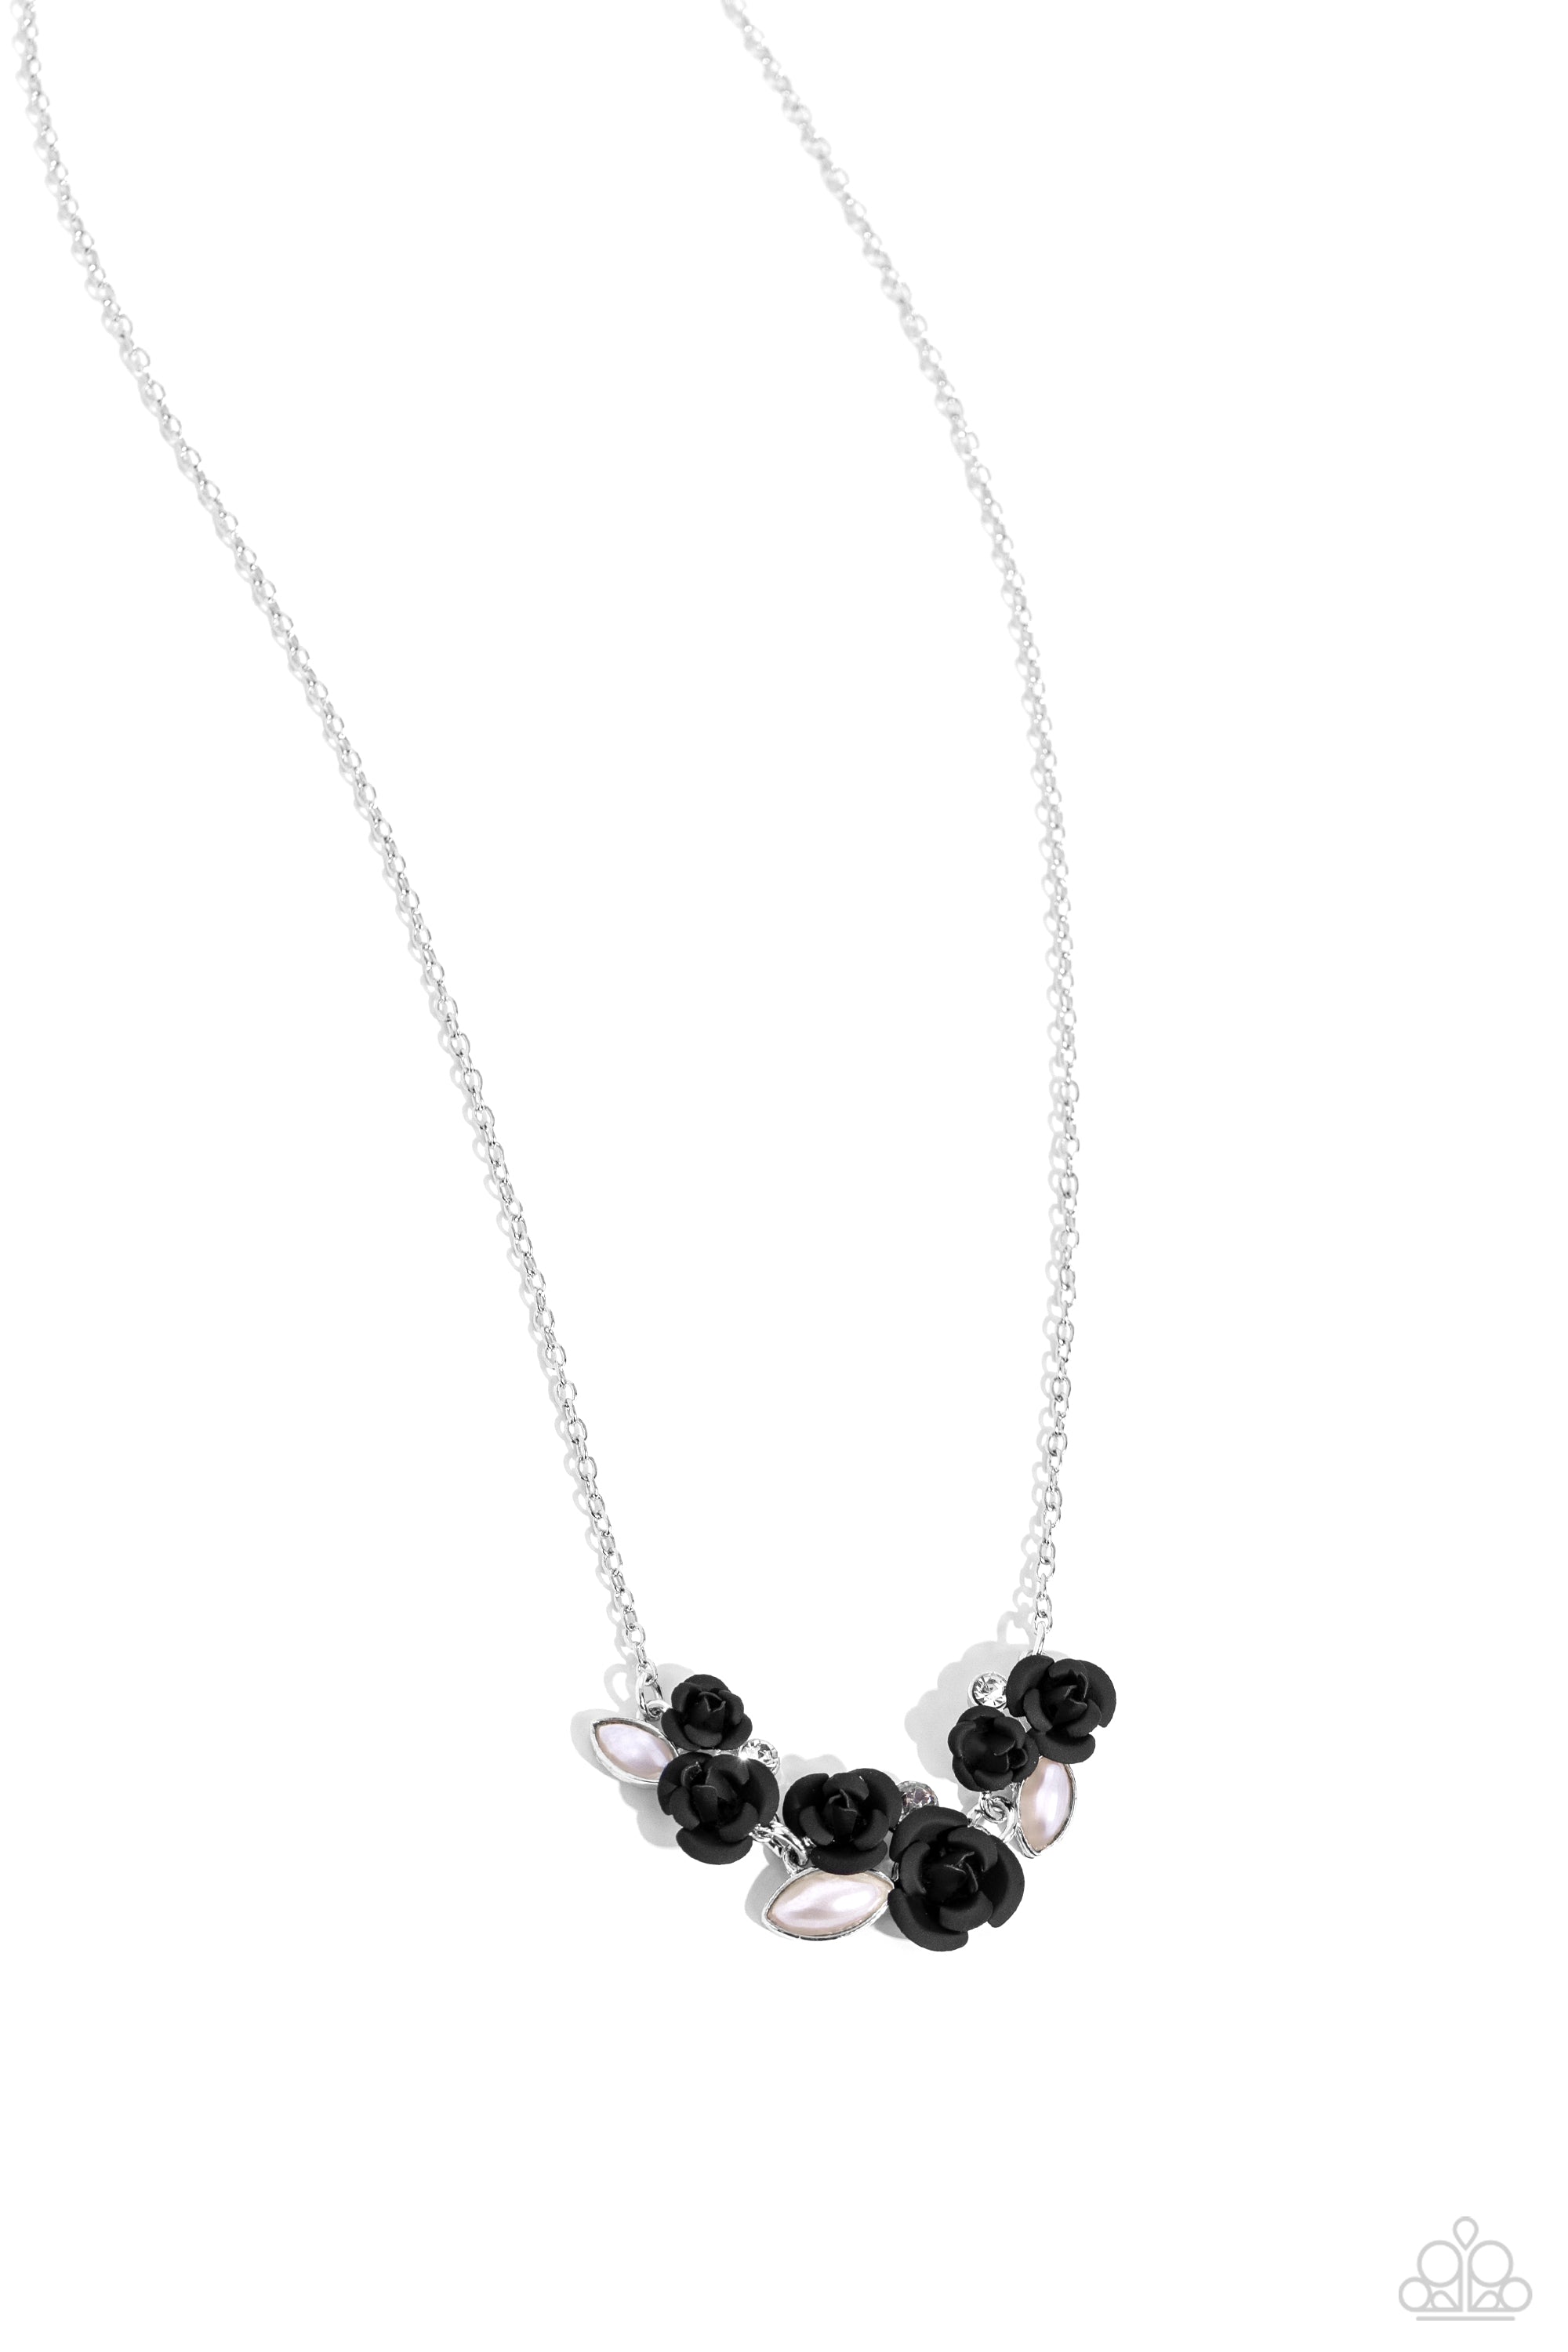 Black rose necklace, 18